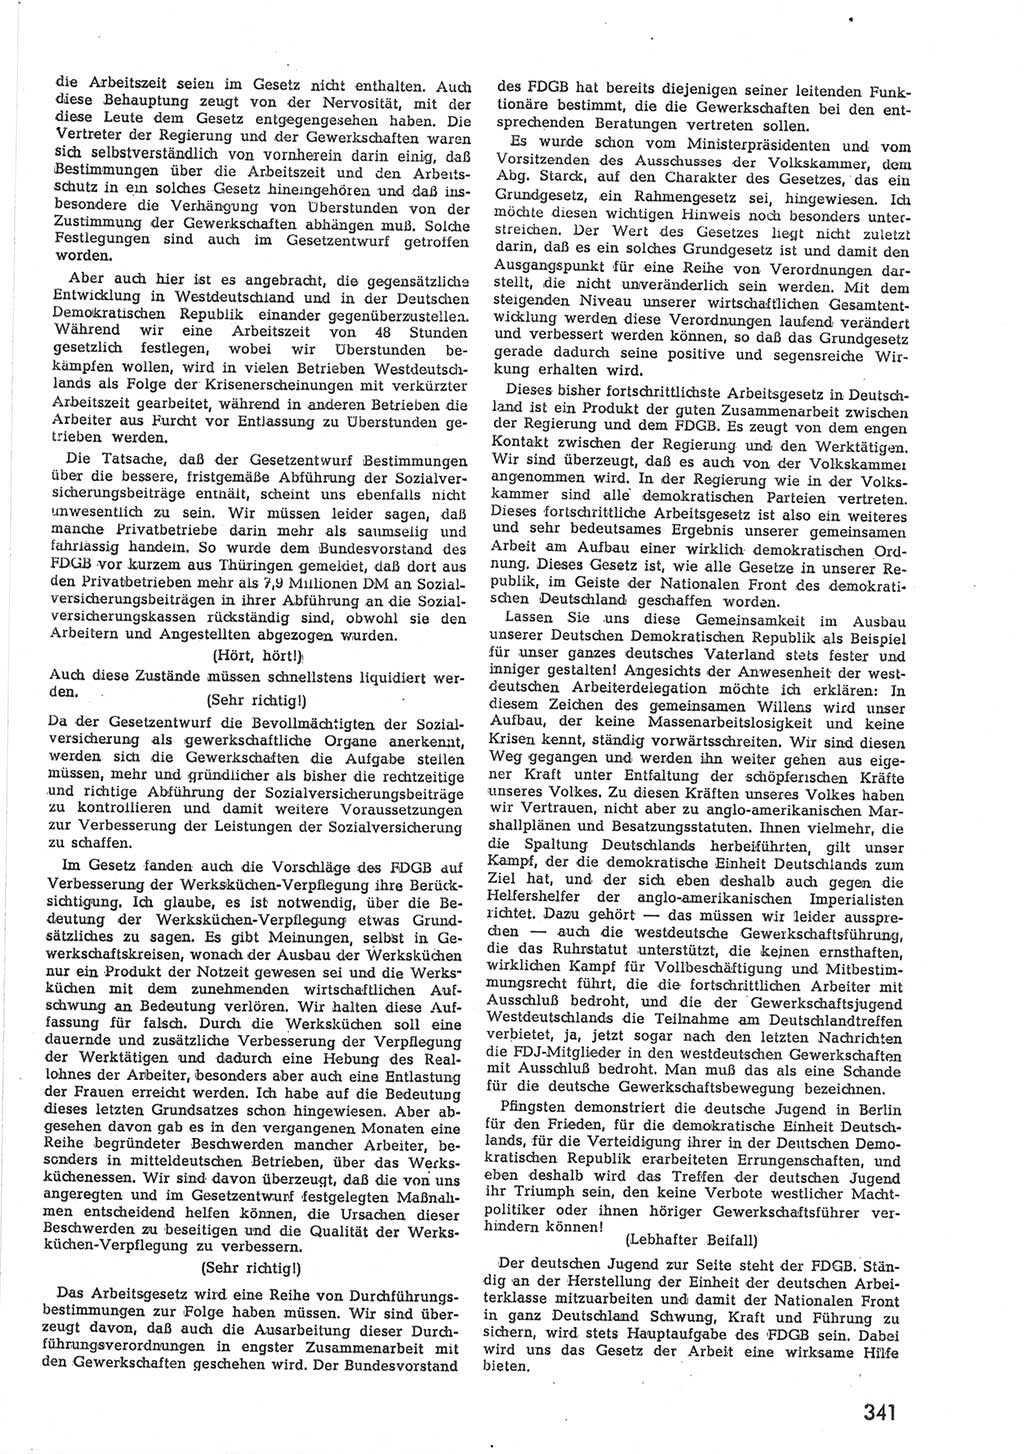 Provisorische Volkskammer (VK) der Deutschen Demokratischen Republik (DDR) 1949-1950, Dokument 355 (Prov. VK DDR 1949-1950, Dok. 355)